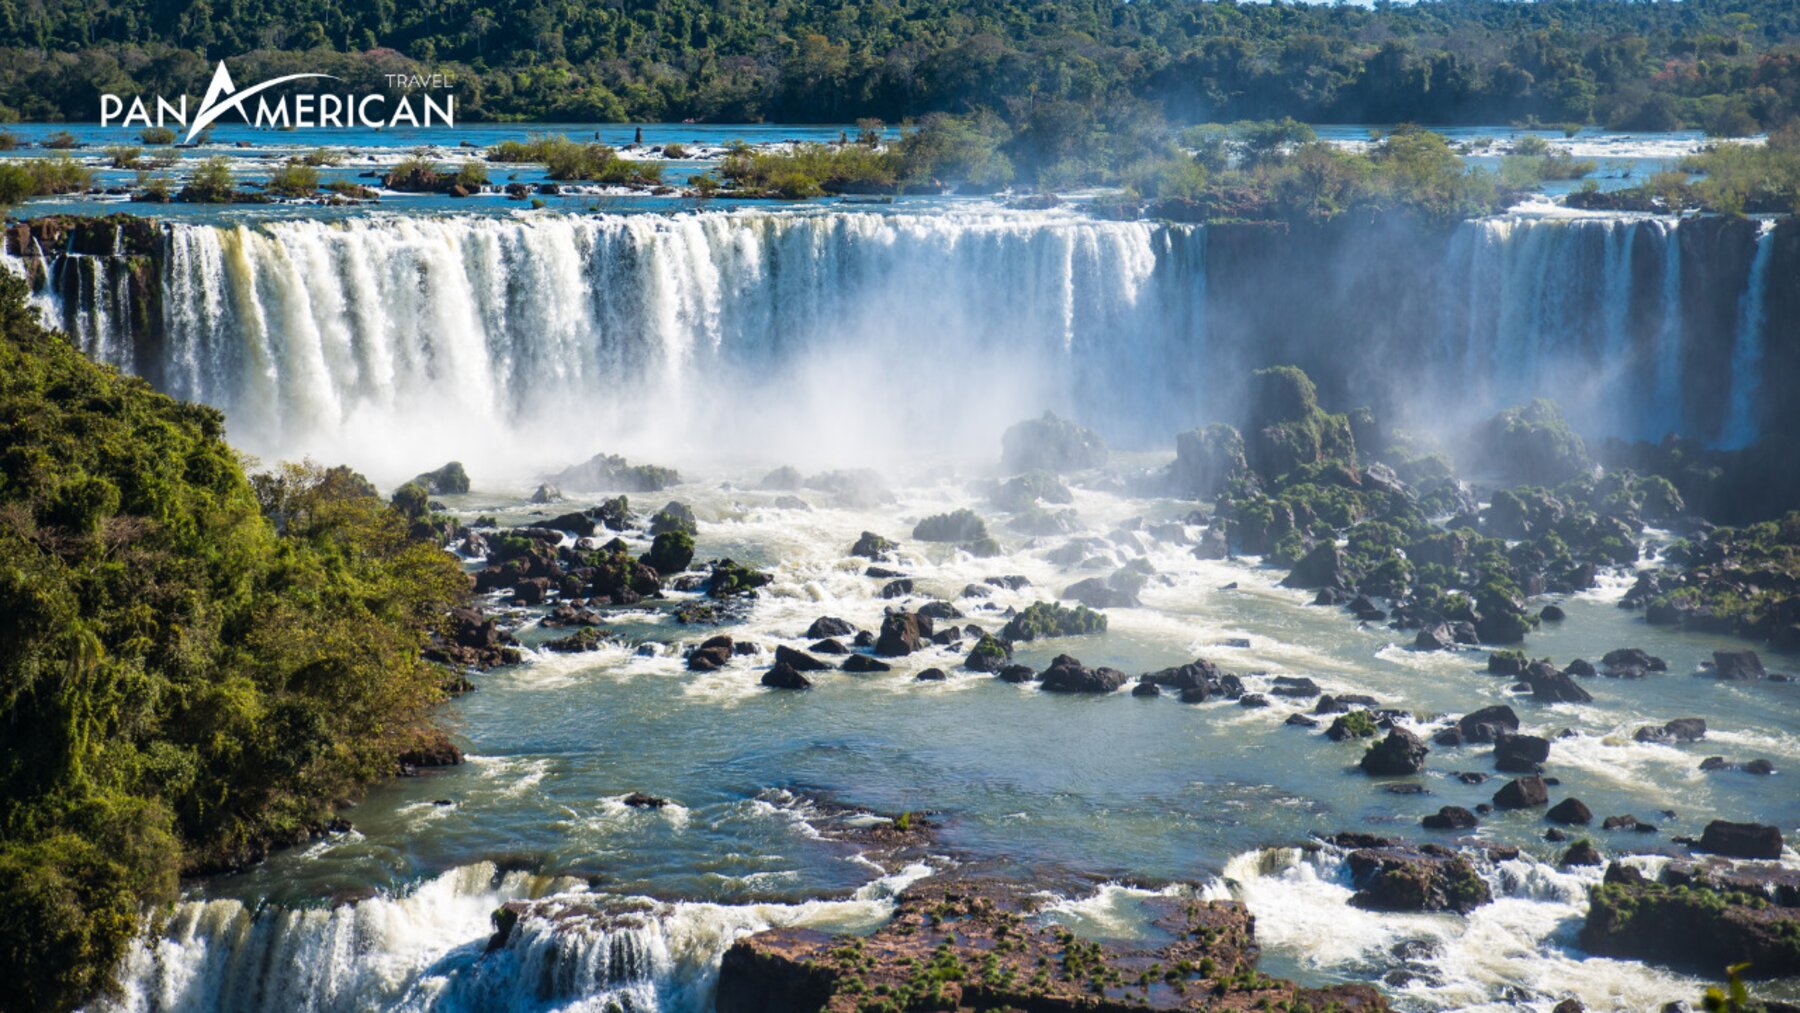 Thác Iguazu – Chiêm ngưỡng kỳ quan giữa vùng nhiệt đới Nam Mỹ   - Gallery Image